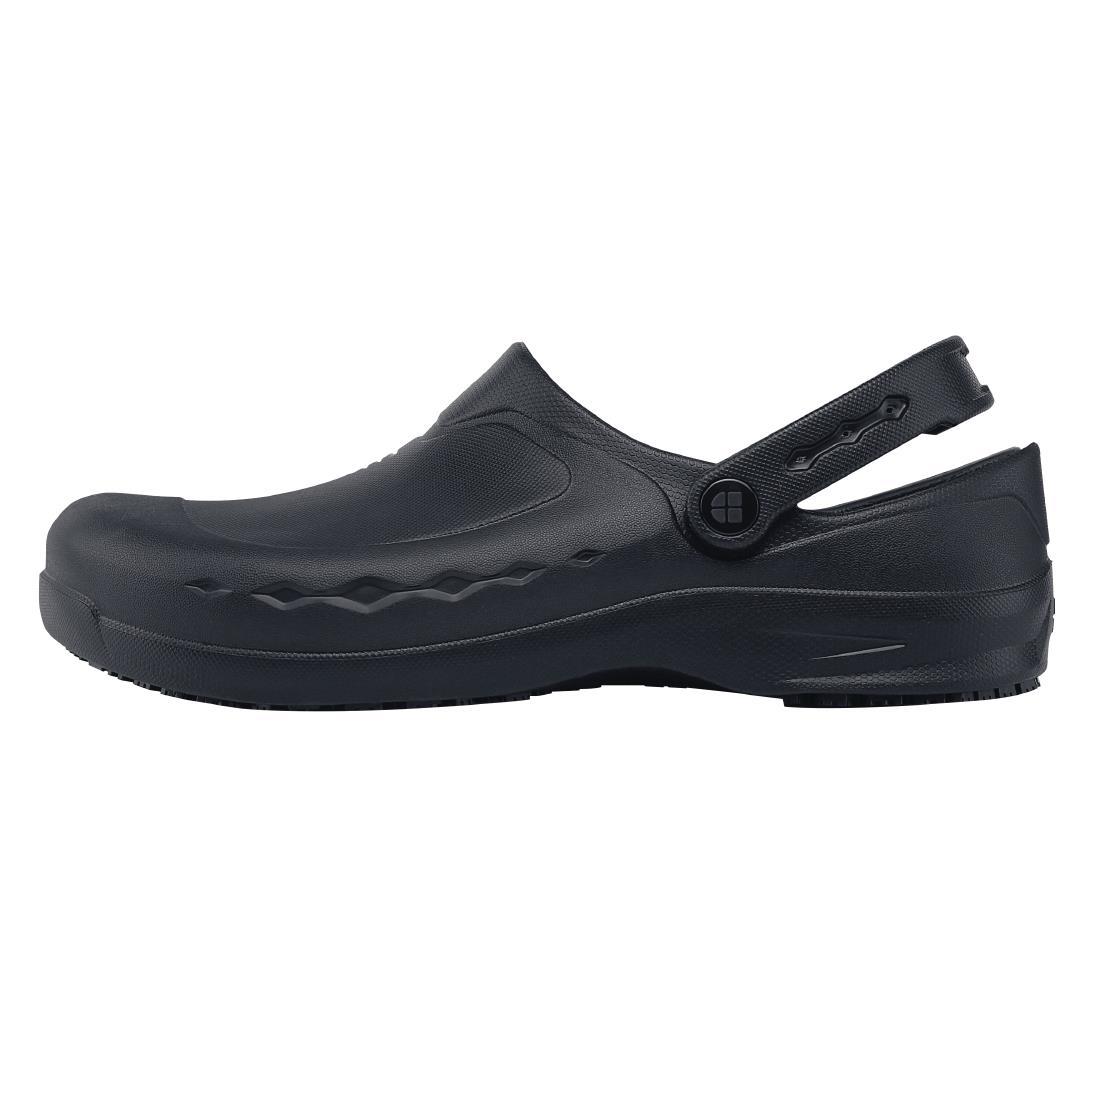 Shoes for Crews Zinc Clogs Black Size 37 - BB569-37  - 1